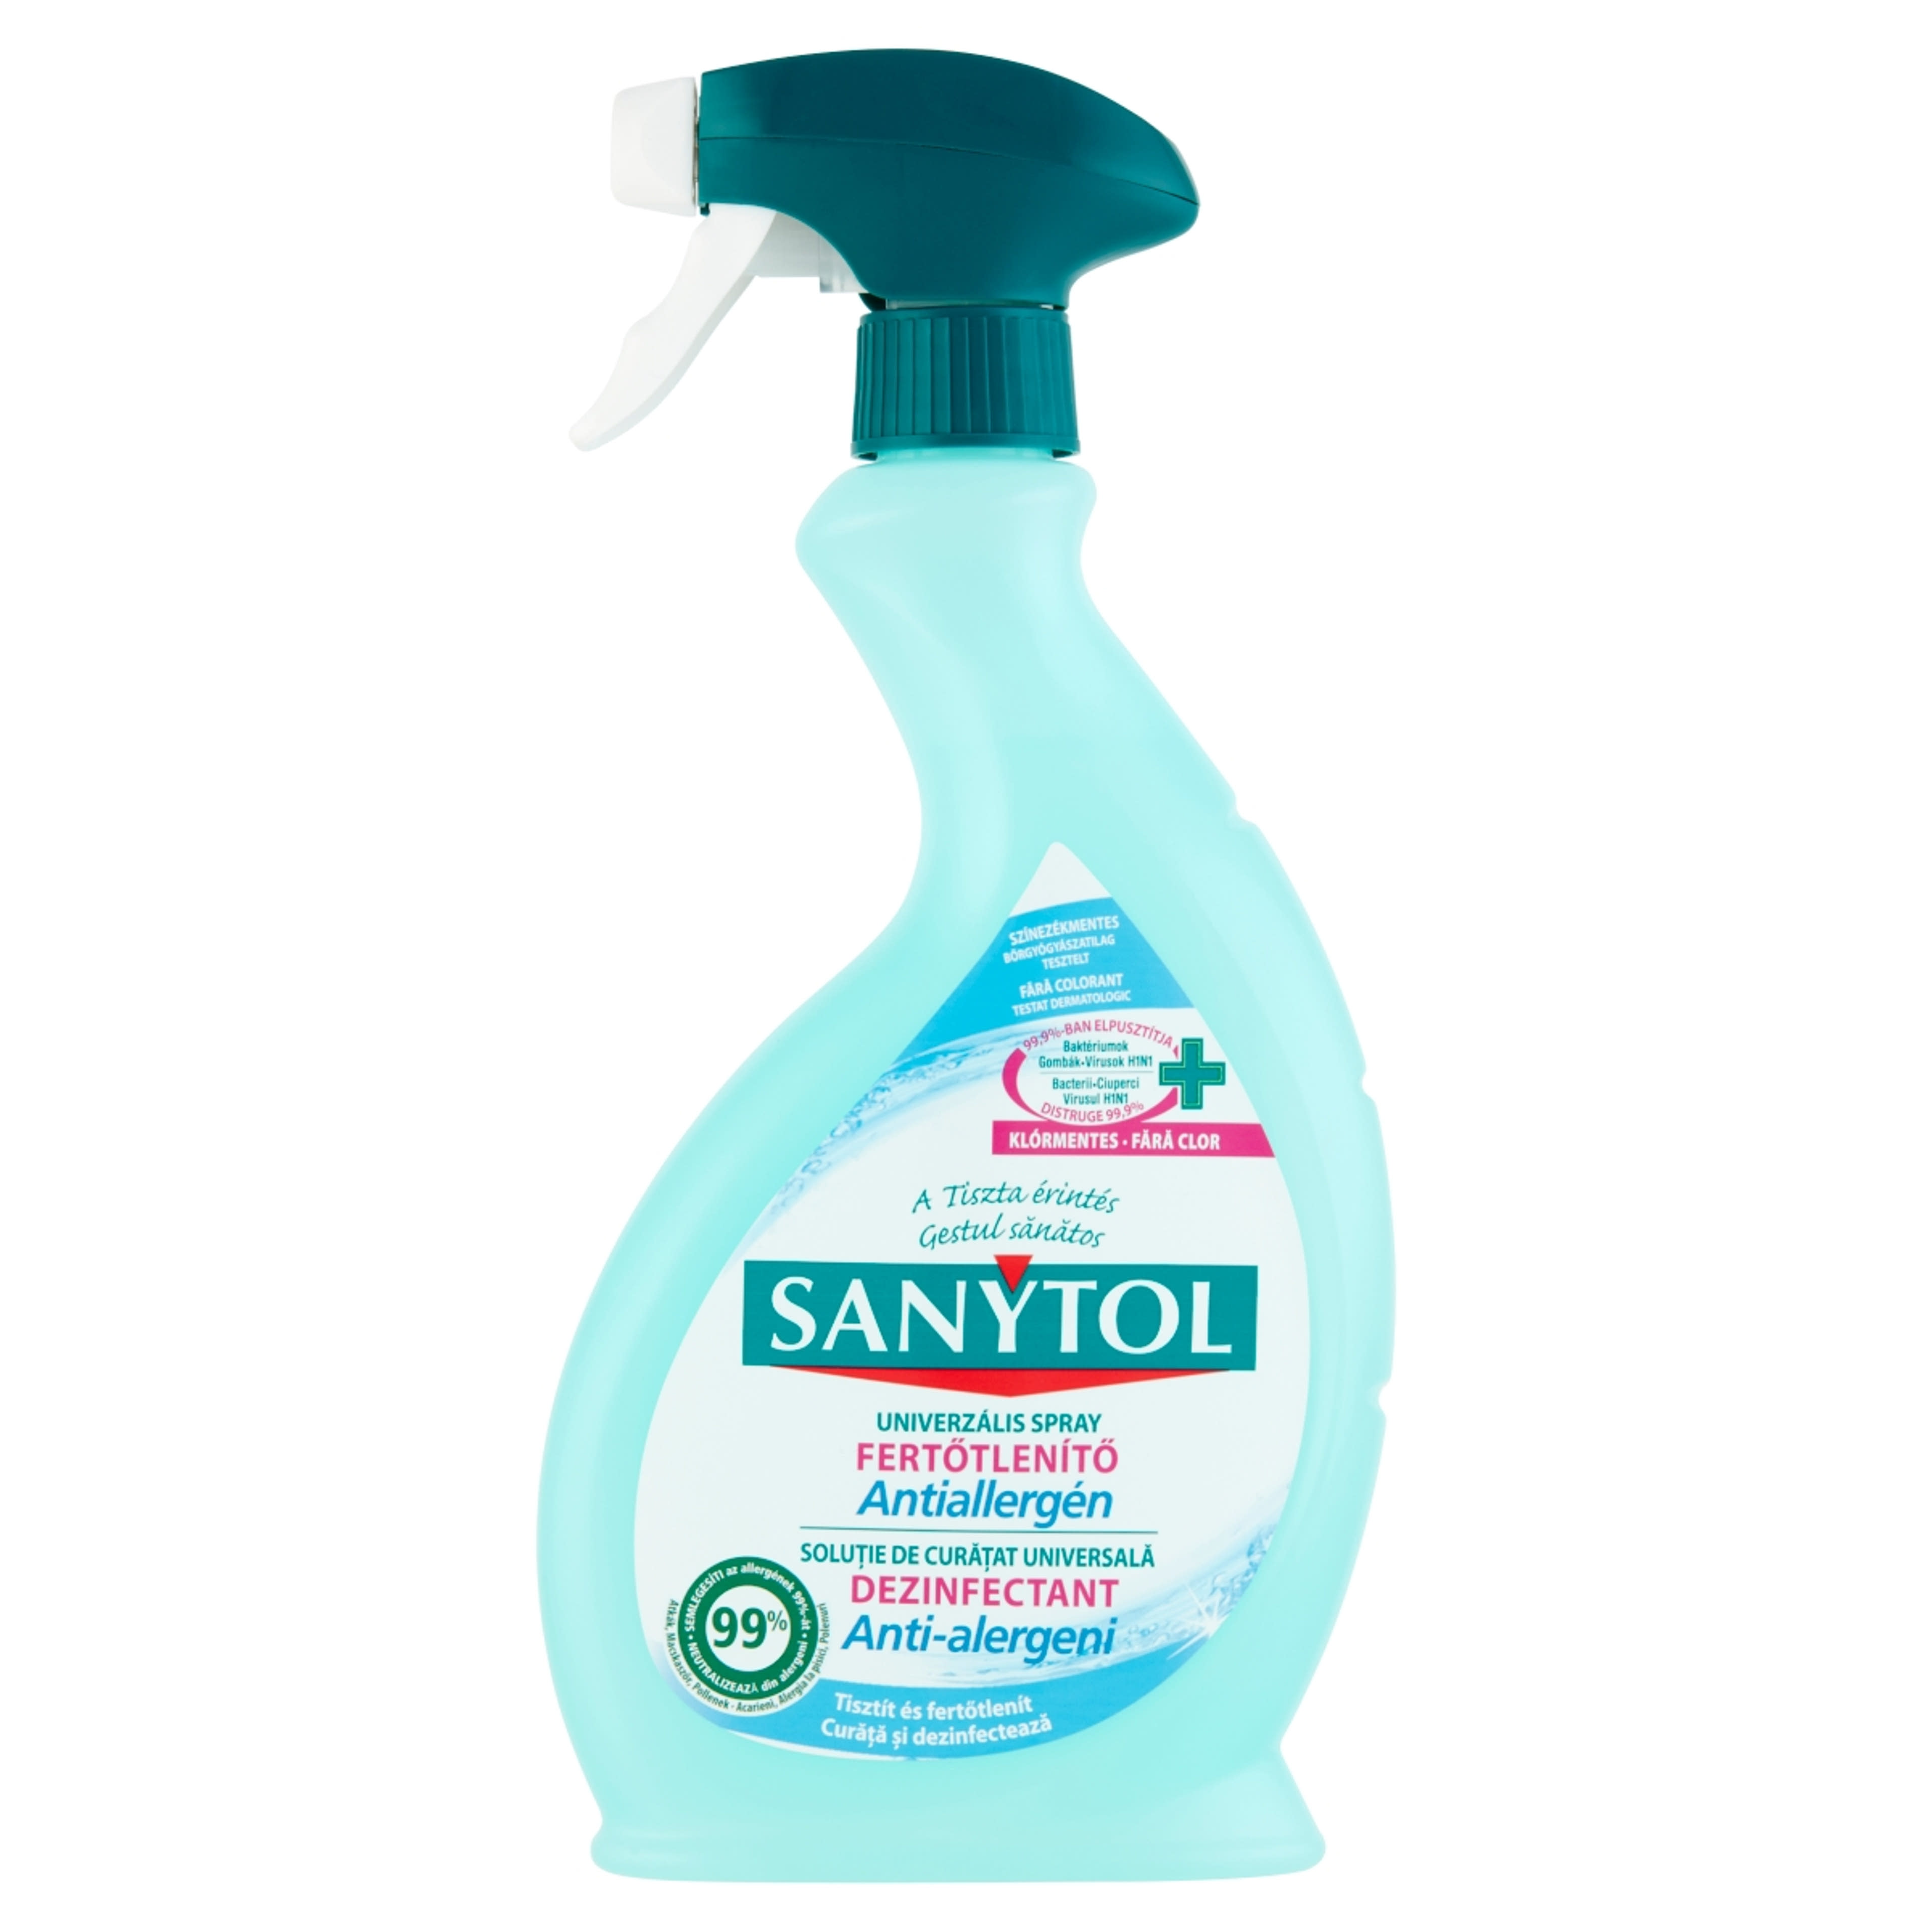 Sanytol Fertőtlenítő Antiallergén Universal spray - 500 ml-1